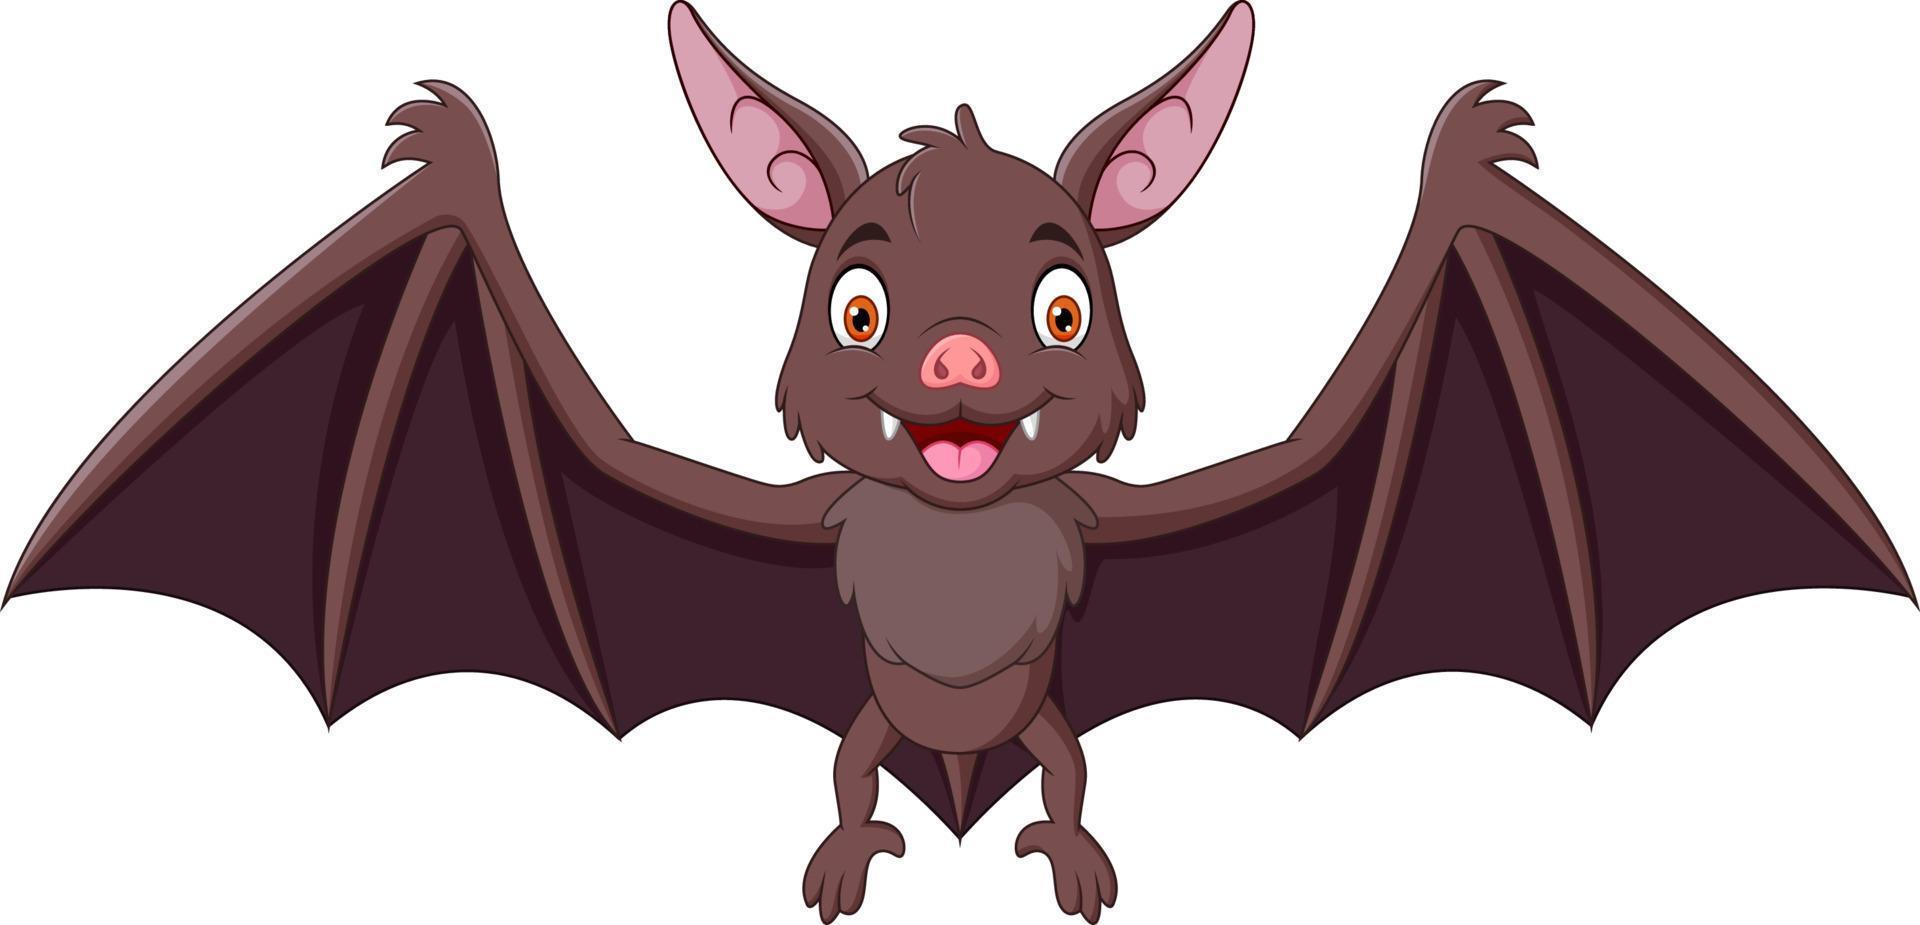 Cartoon Cute small bat flying 12851833 Vector Art at Vecteezy